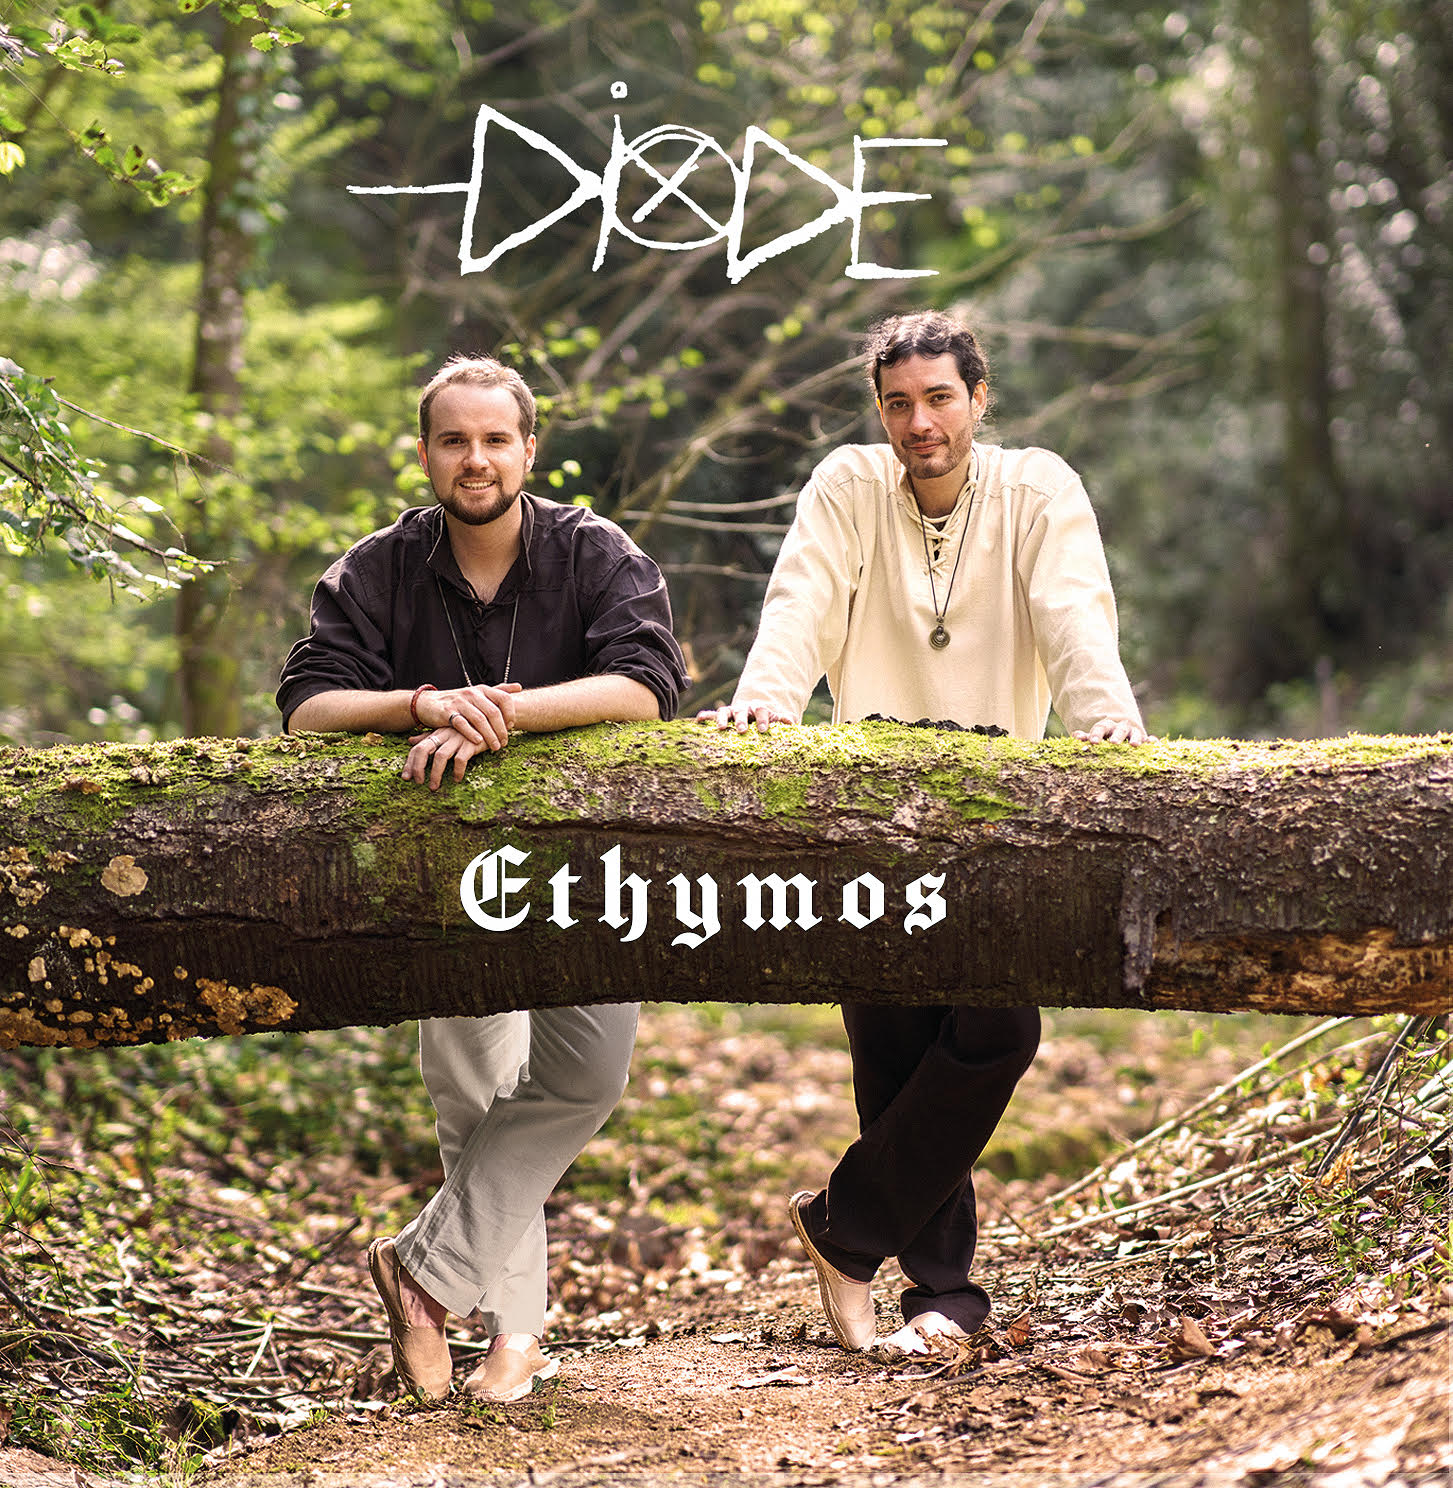 Portada del nou disc de Diode "Ethymos" podem veure el duo en un paisatge natural.